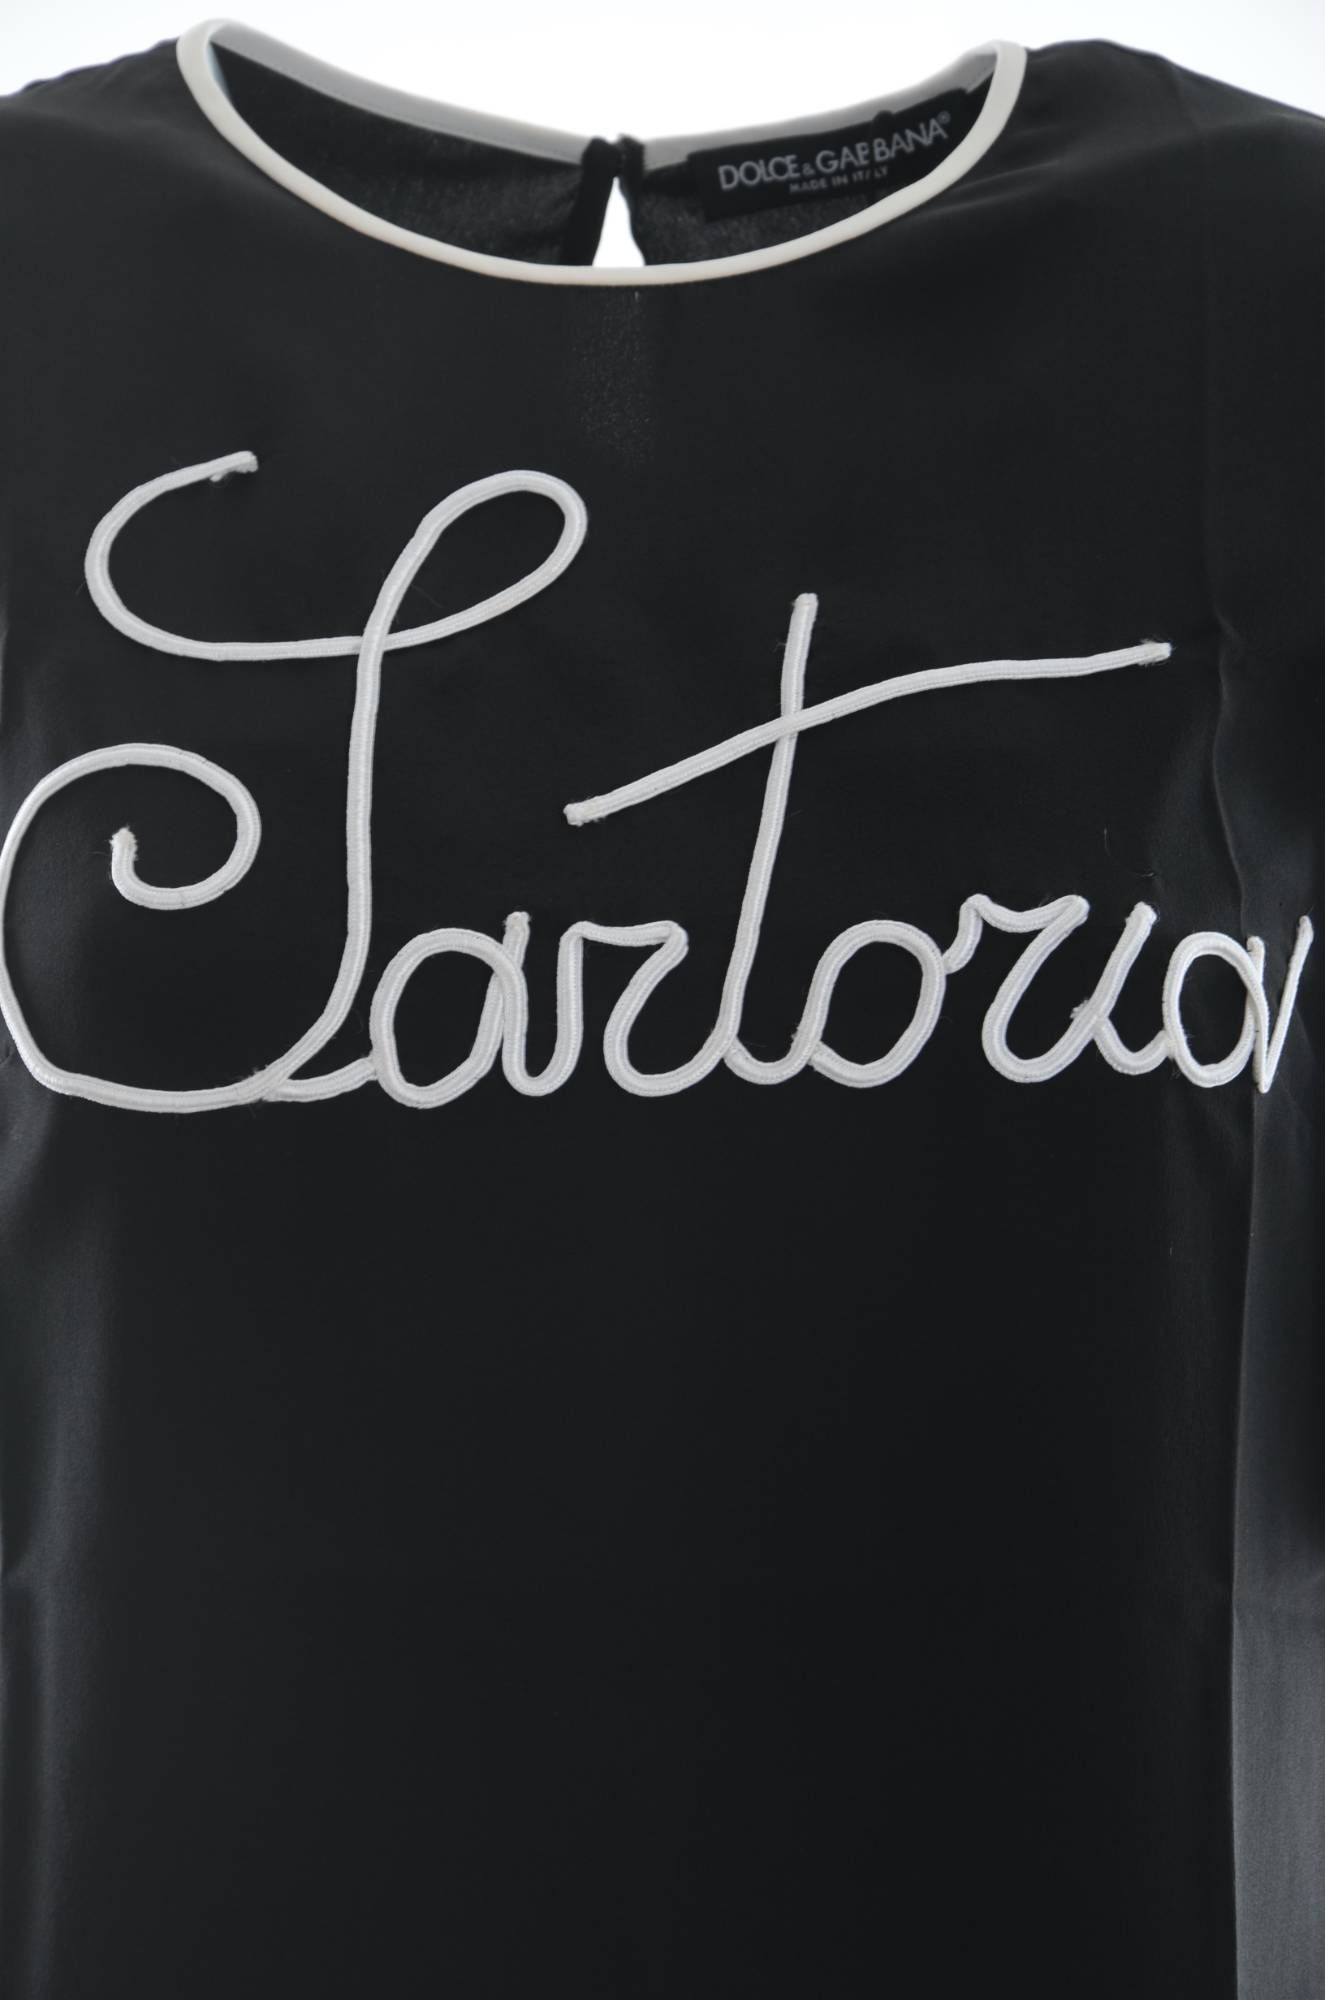 Dolce & Gabbana Women Blouse